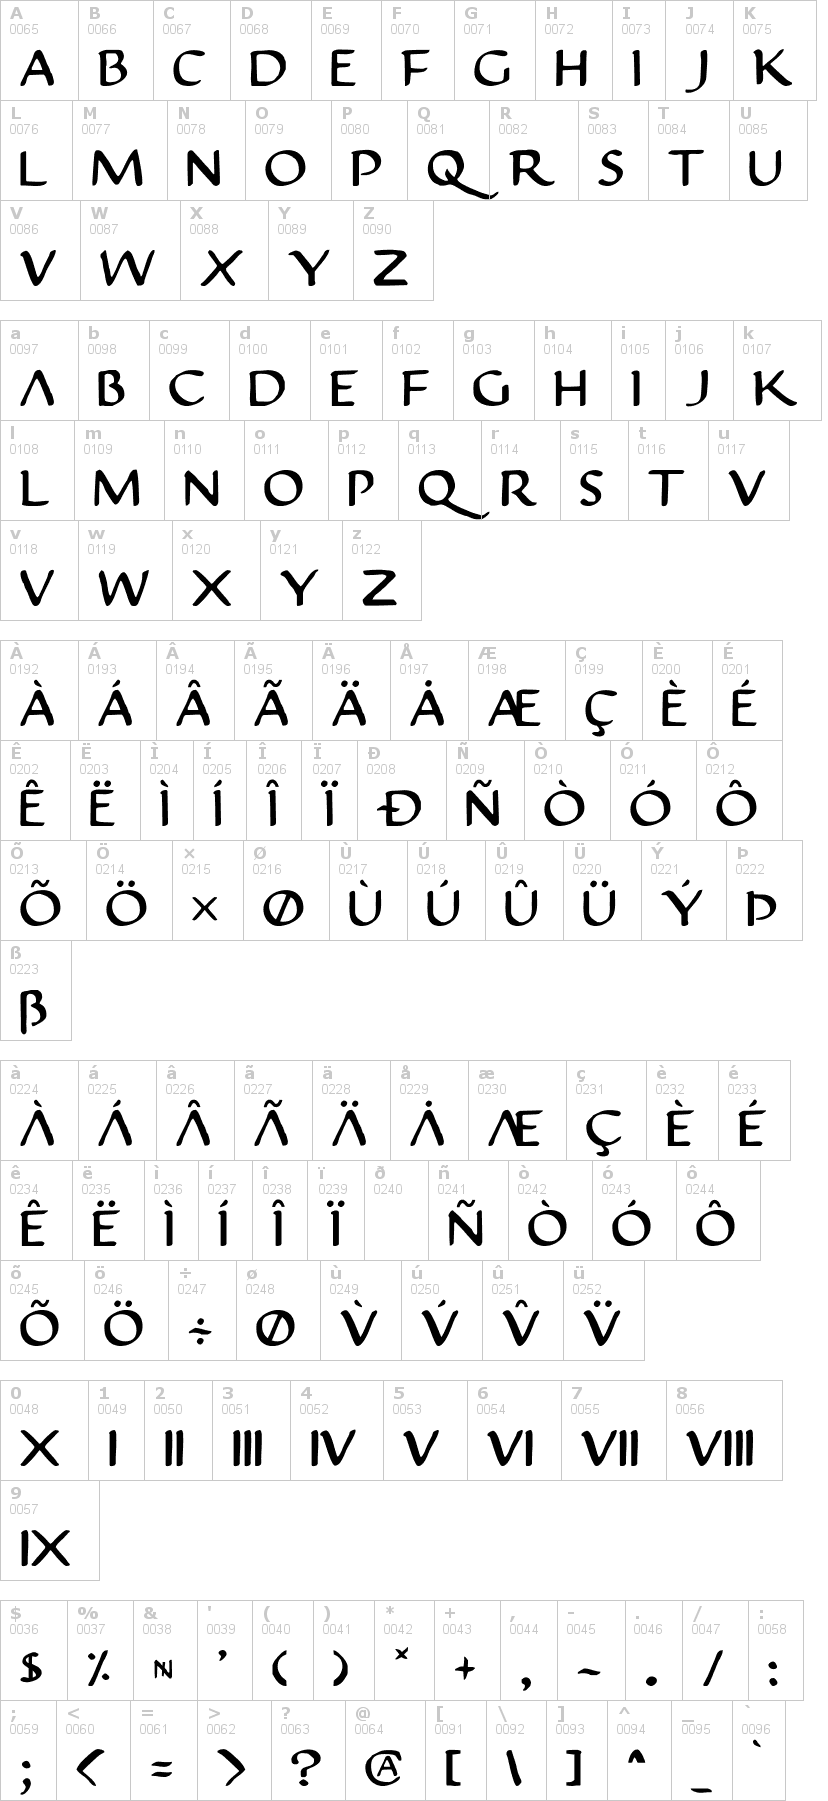 Lettere dell'alfabeto del font justinian con le quali è possibile realizzare adesivi prespaziati